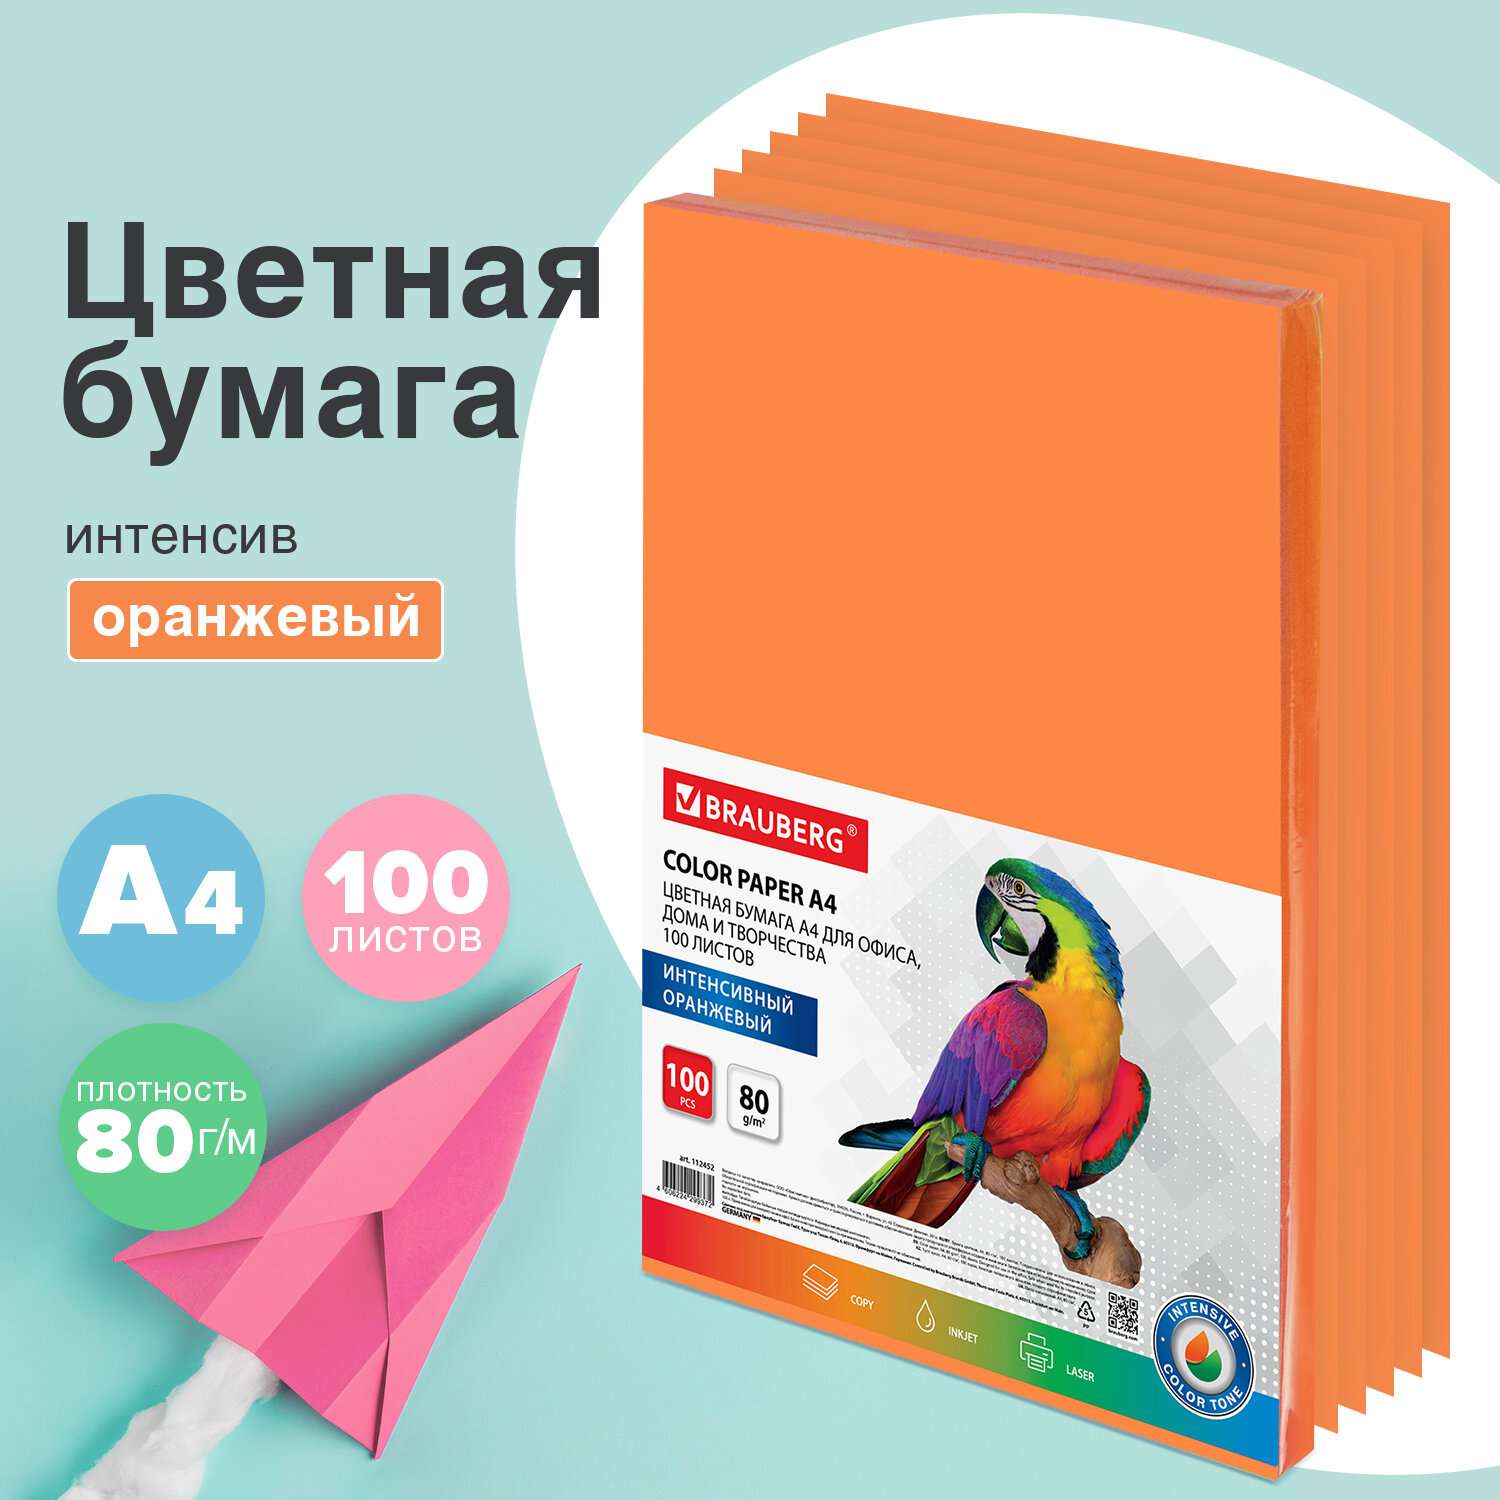 Цветная бумага Brauberg для принтера и школы А4 набор 100 листов оранжевая - фото 1